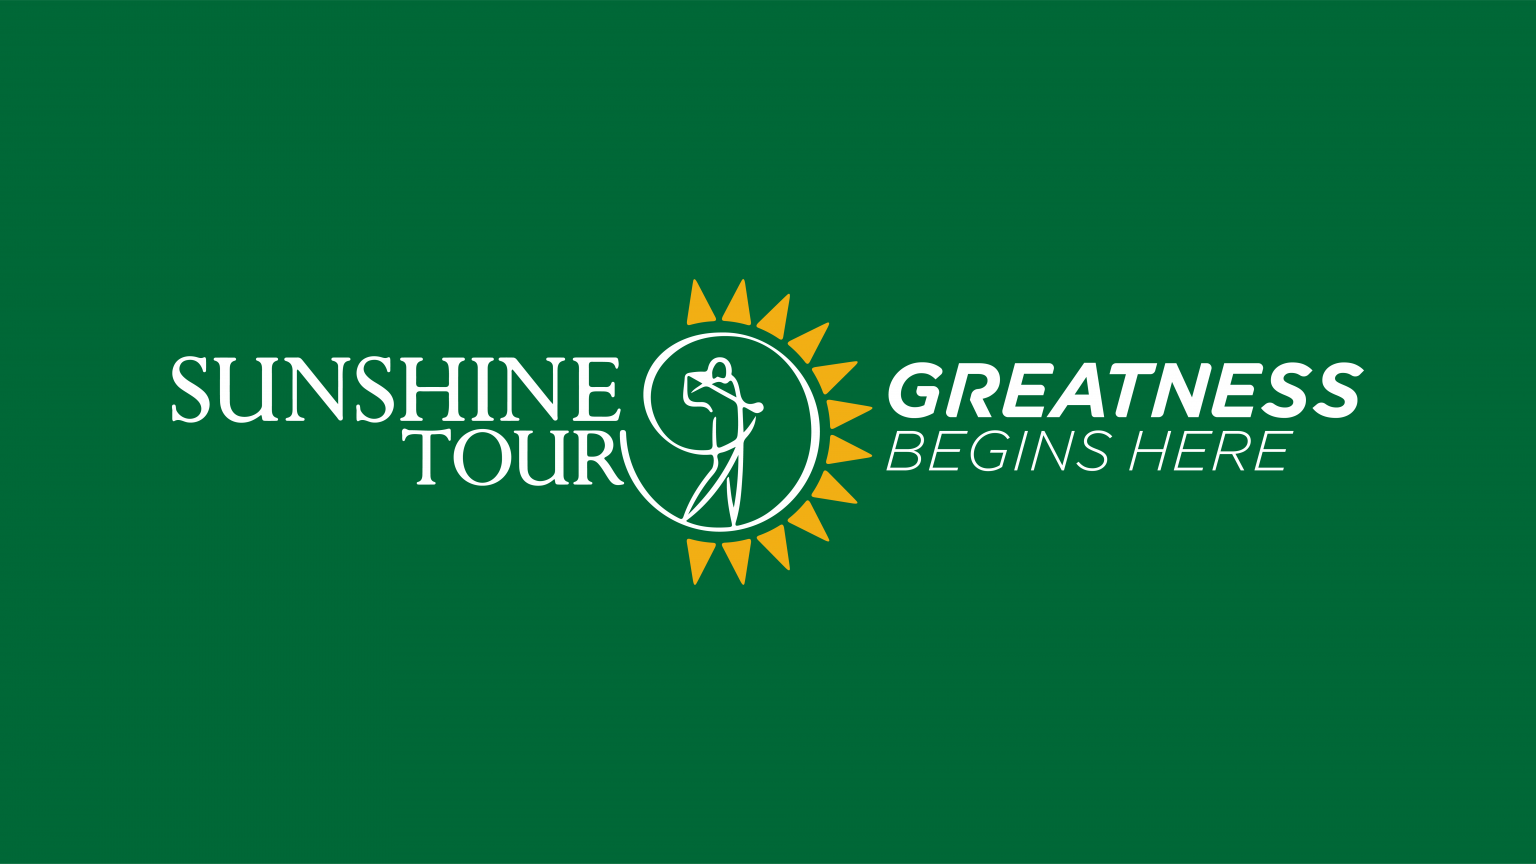 Sunshine Tour announces new DP World Tour and Challenge Tour growth